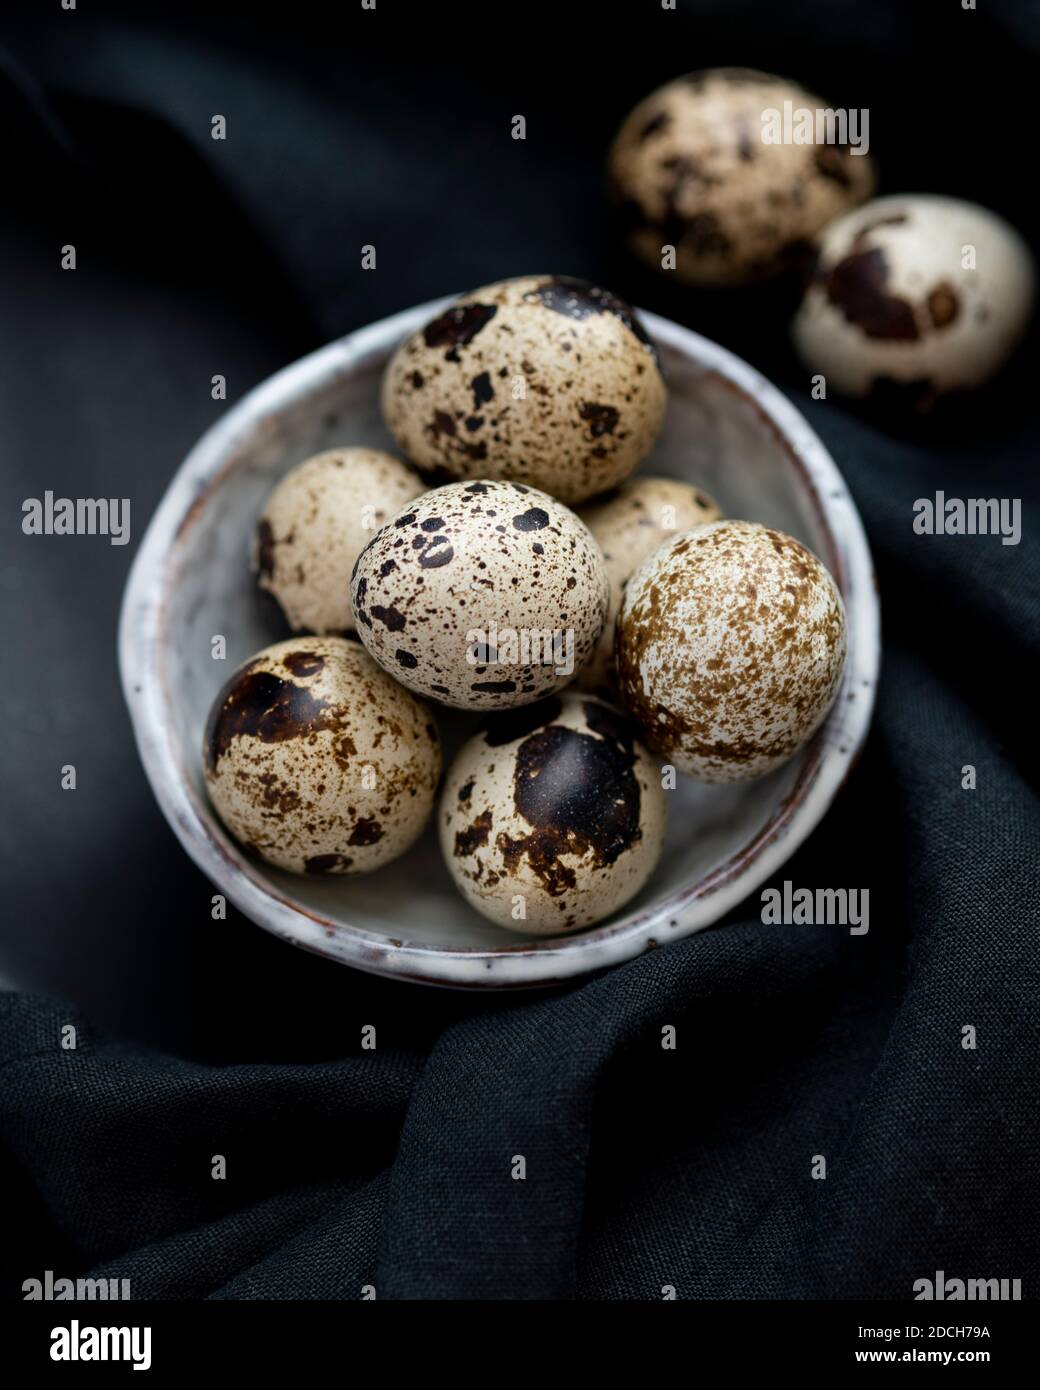 Uova di quaglia in ciotola bianca su sfondo nero, uova di quaglia, mucchio di uova di quaglie in ciotola, uova macchiate, uova macchiate in ciotola, uova di quaglia su sfondo scuro Foto Stock